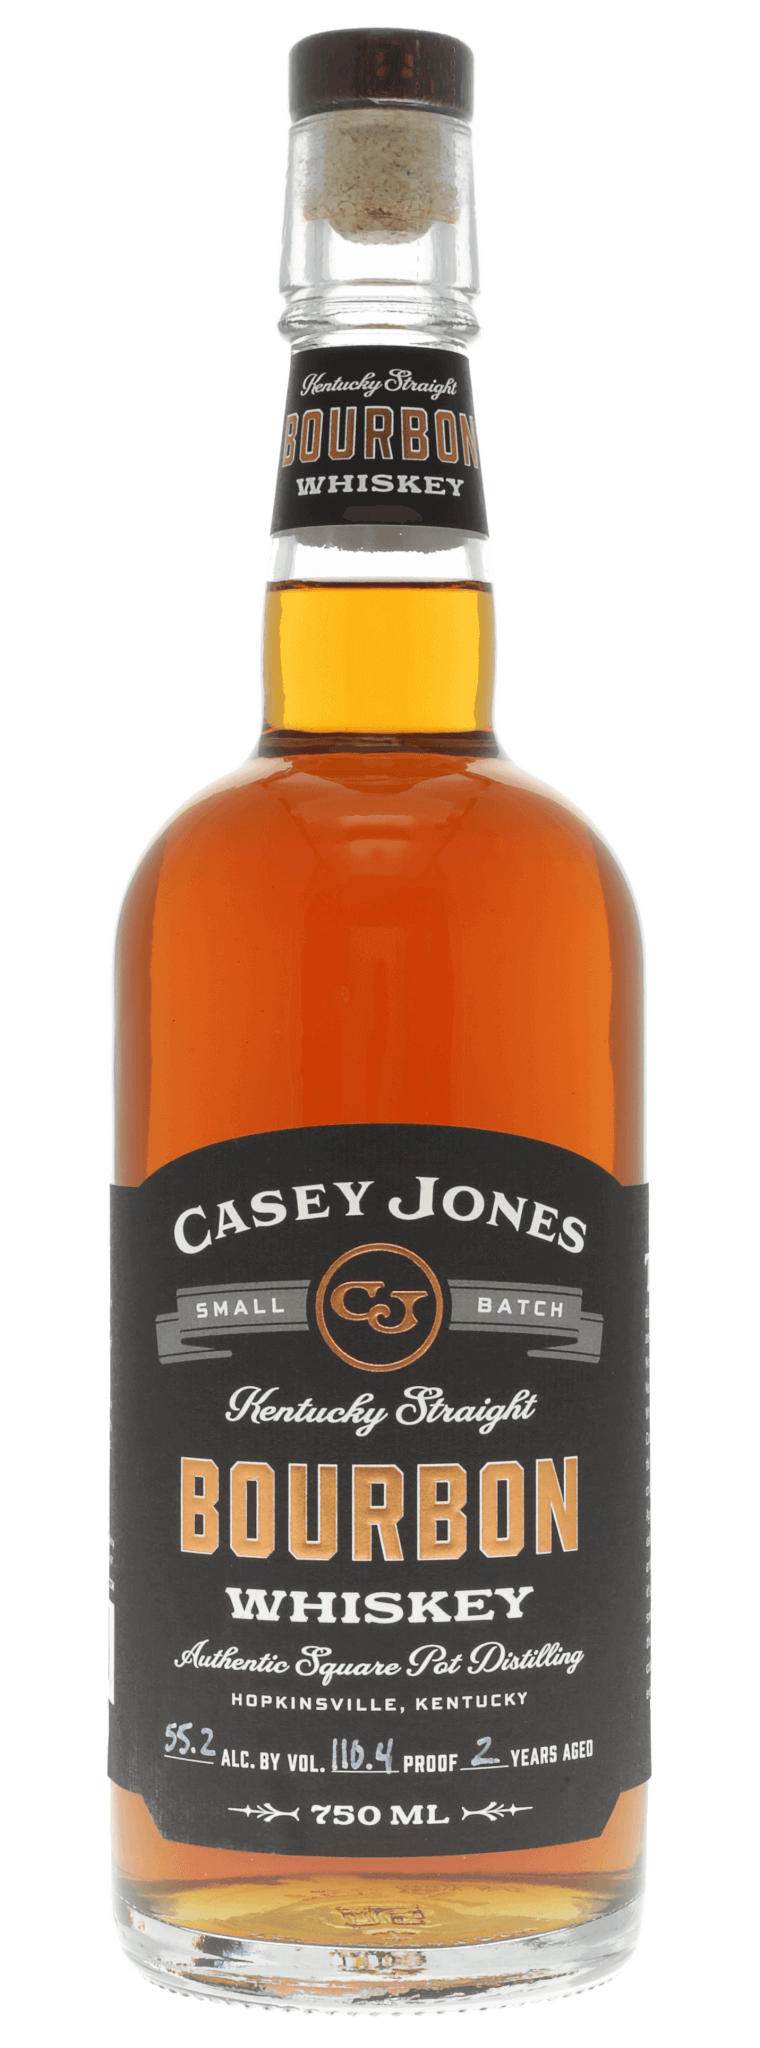 Casey Jones 2 Year Kentucky Straight Bourbon